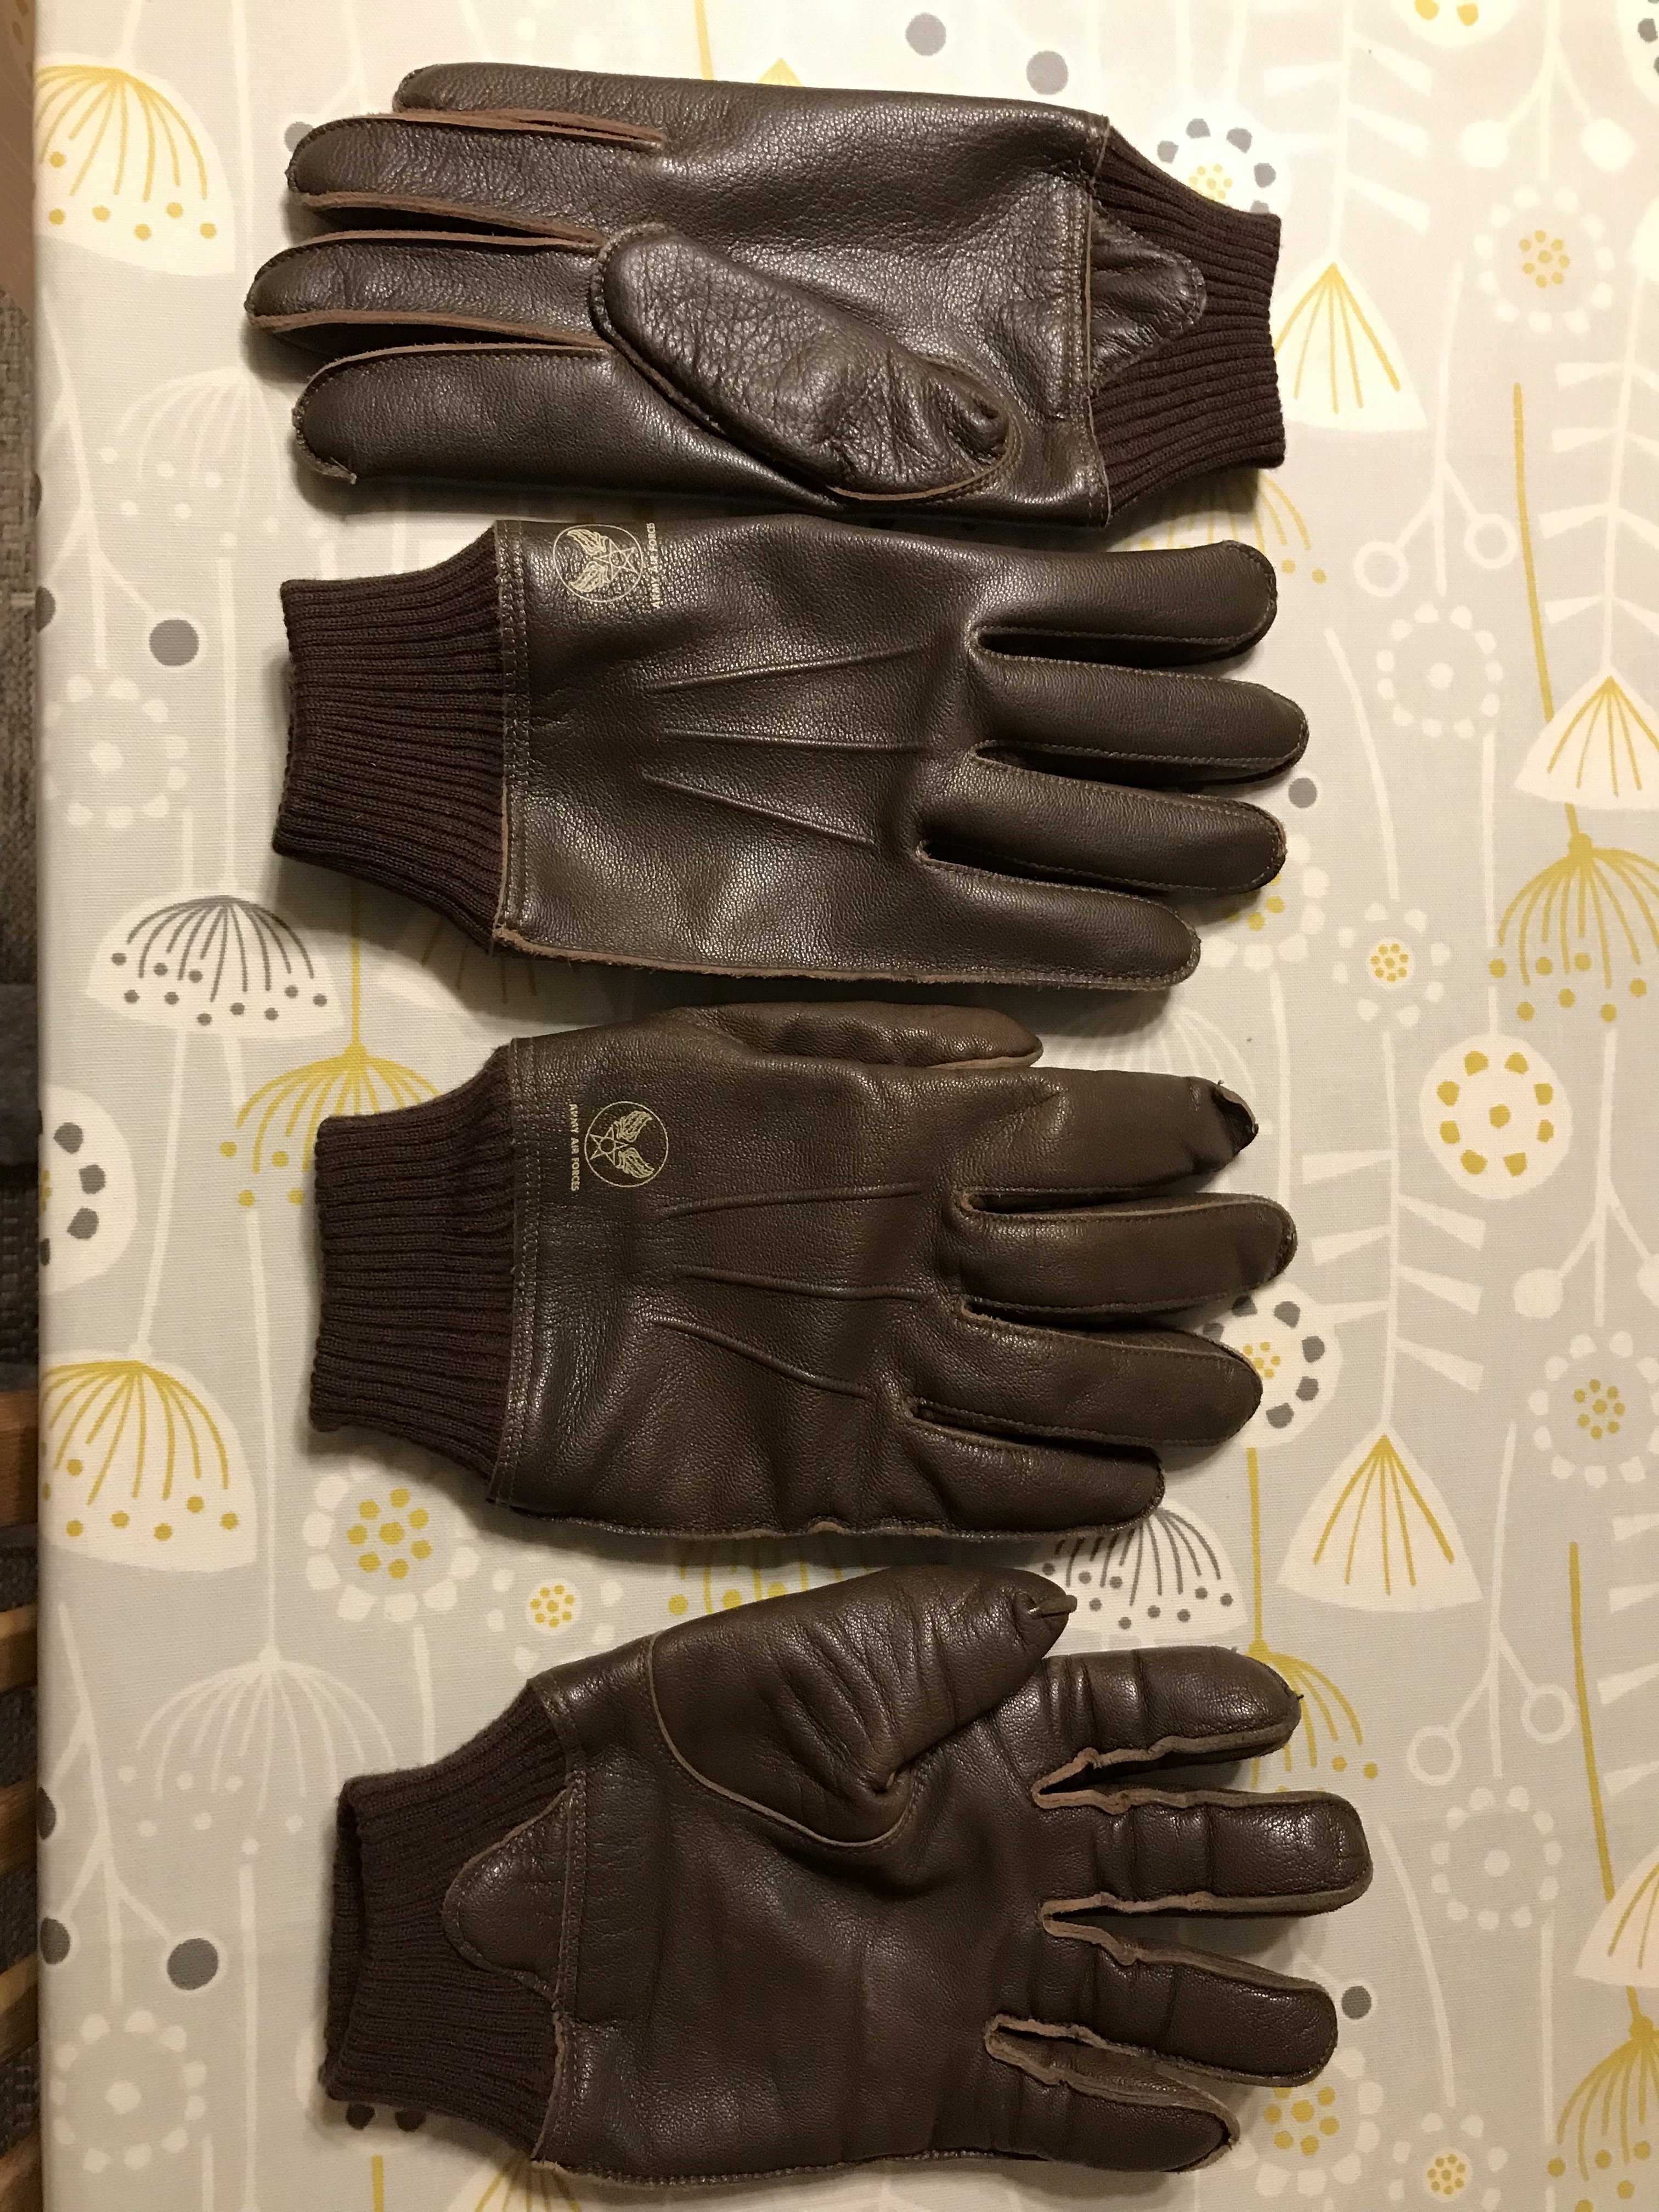 MASH A-10/USN Gloves | Vintage Leather Jackets Forum